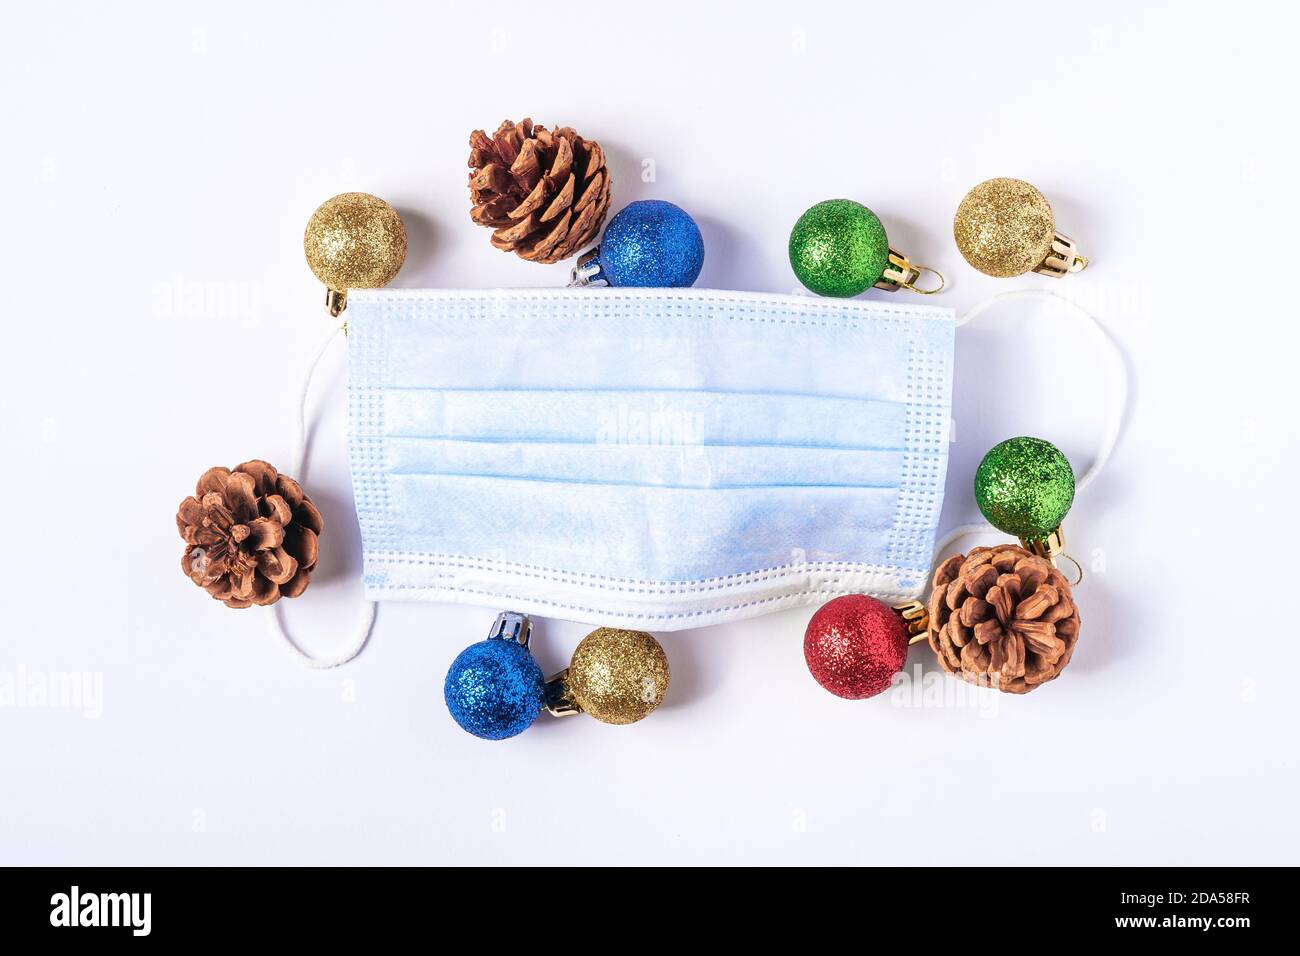 Composizione natalizia con maschera medica e palline colorate, decorazioni ornamentali su sfondo bianco Foto Stock